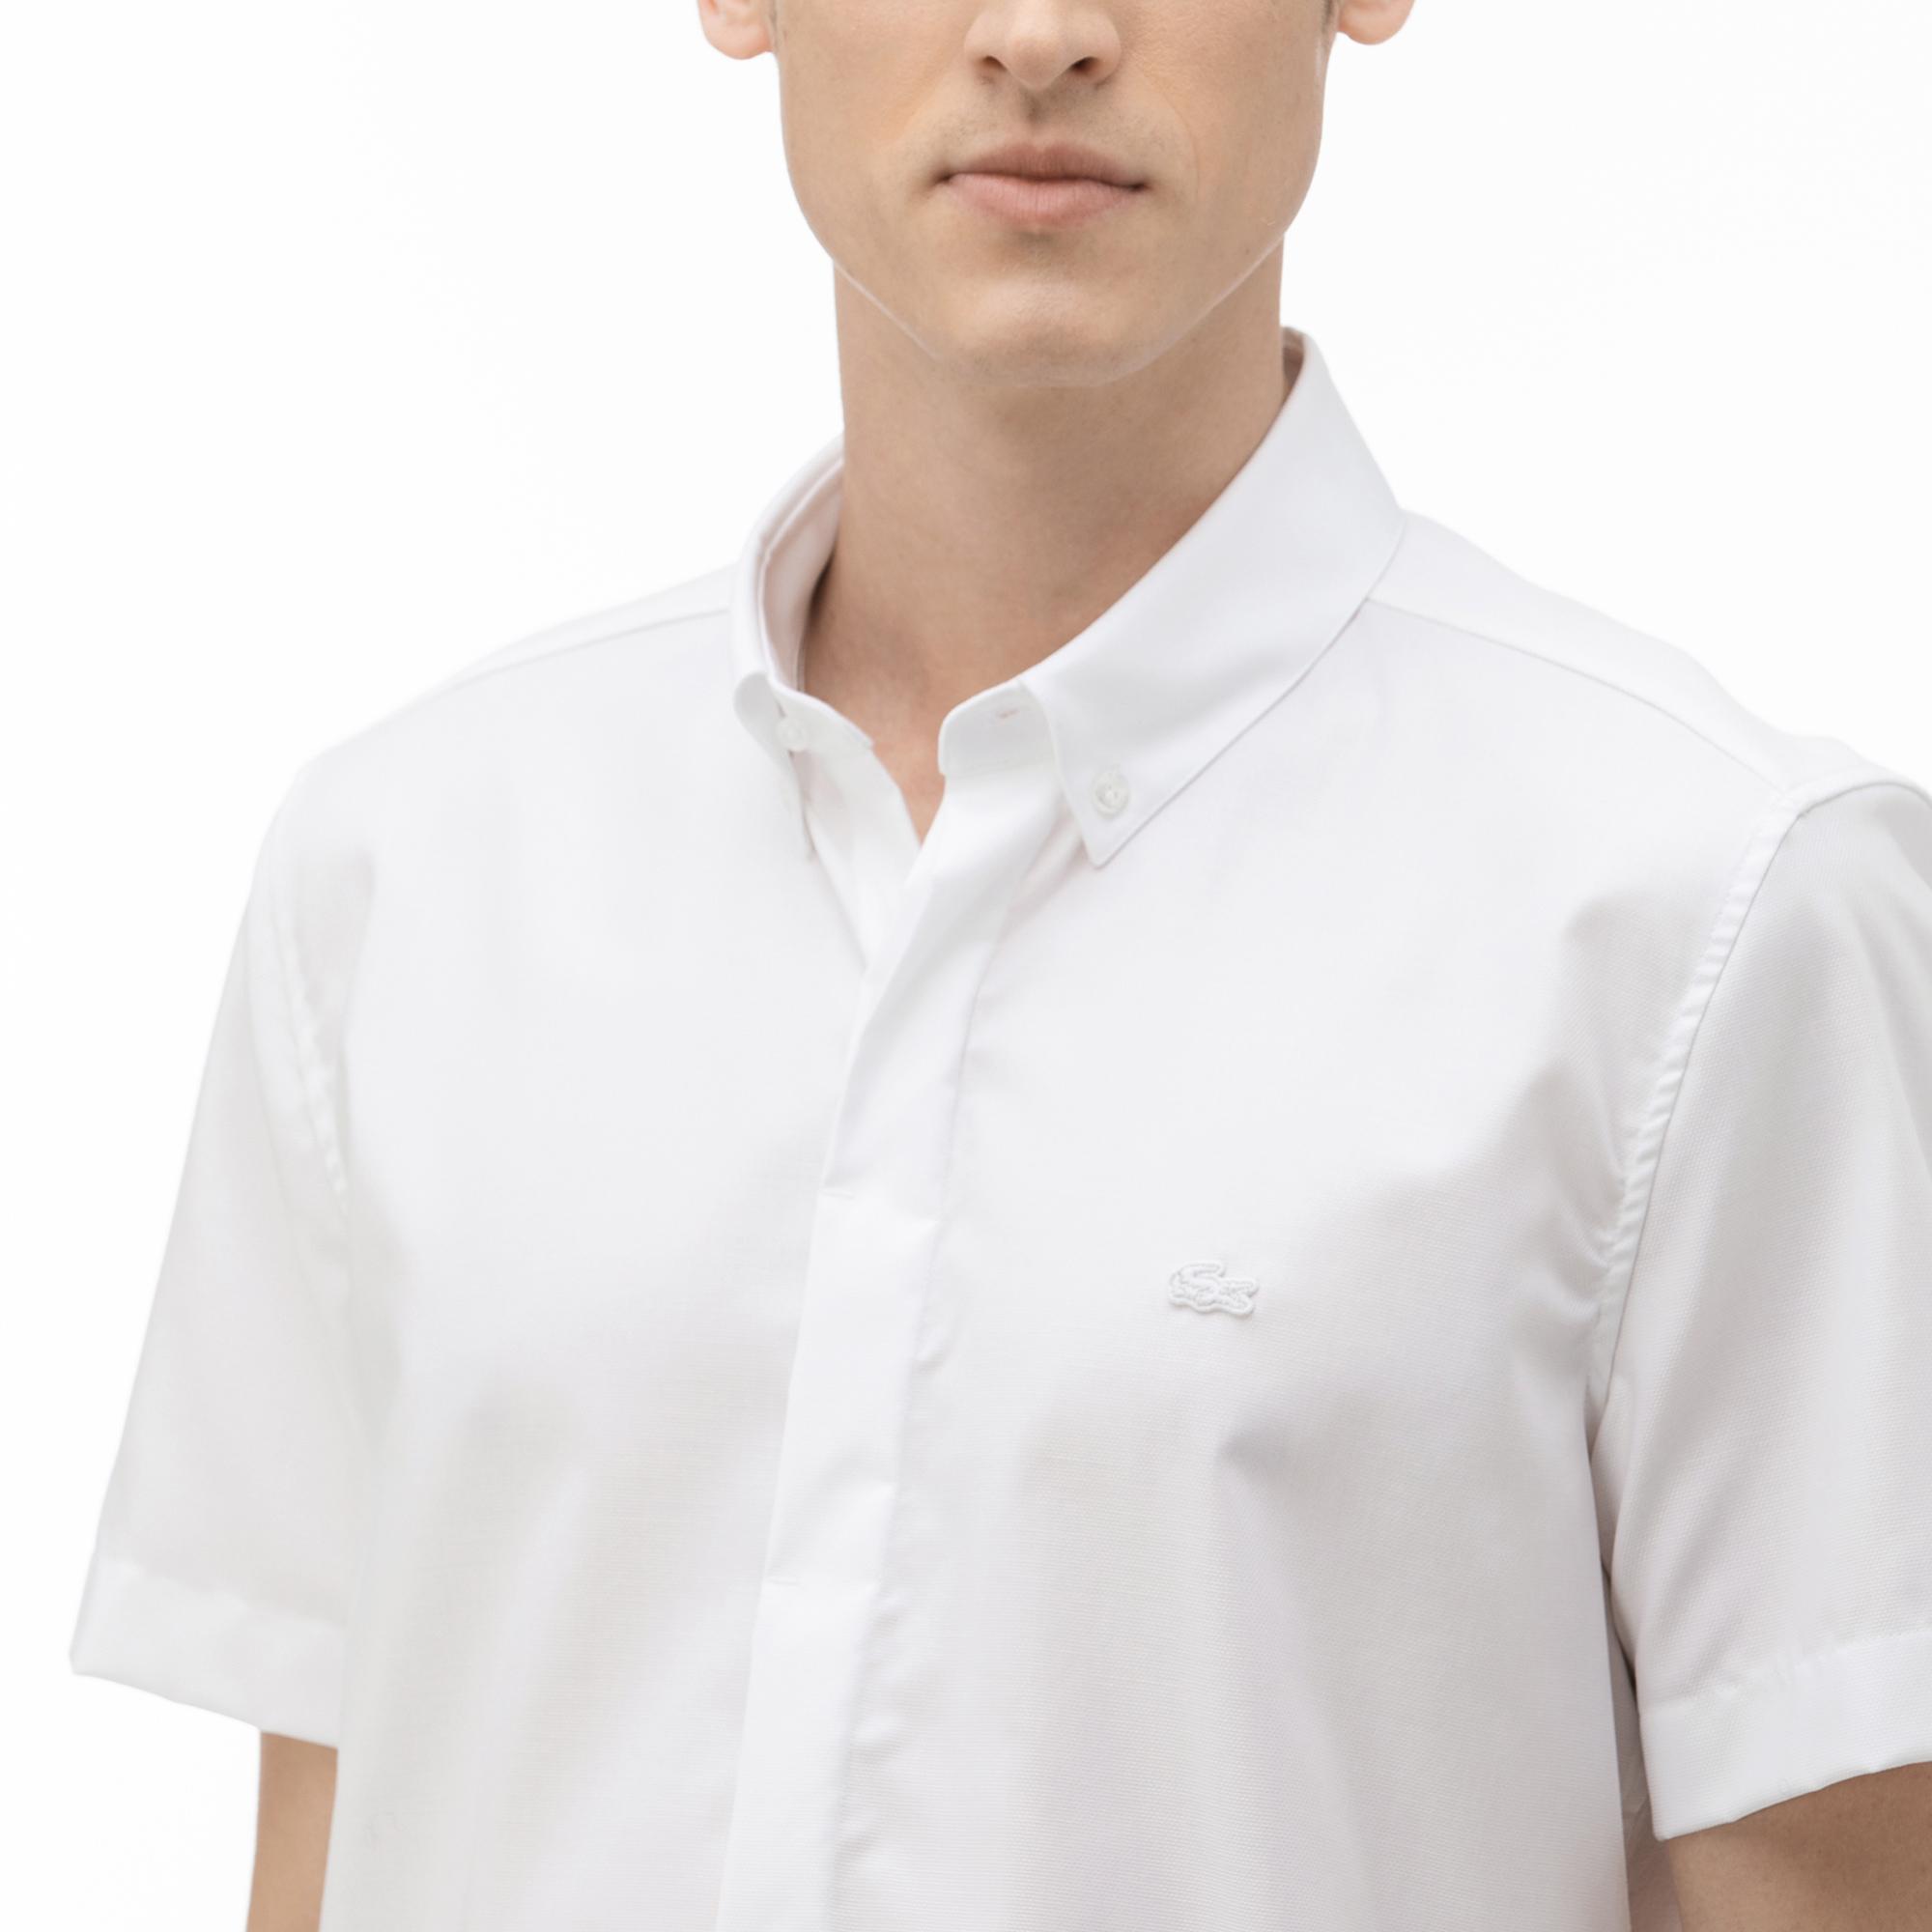 Lacoste Erkek Slim Fit Kısa Kollu Beyaz Gömlek. 5